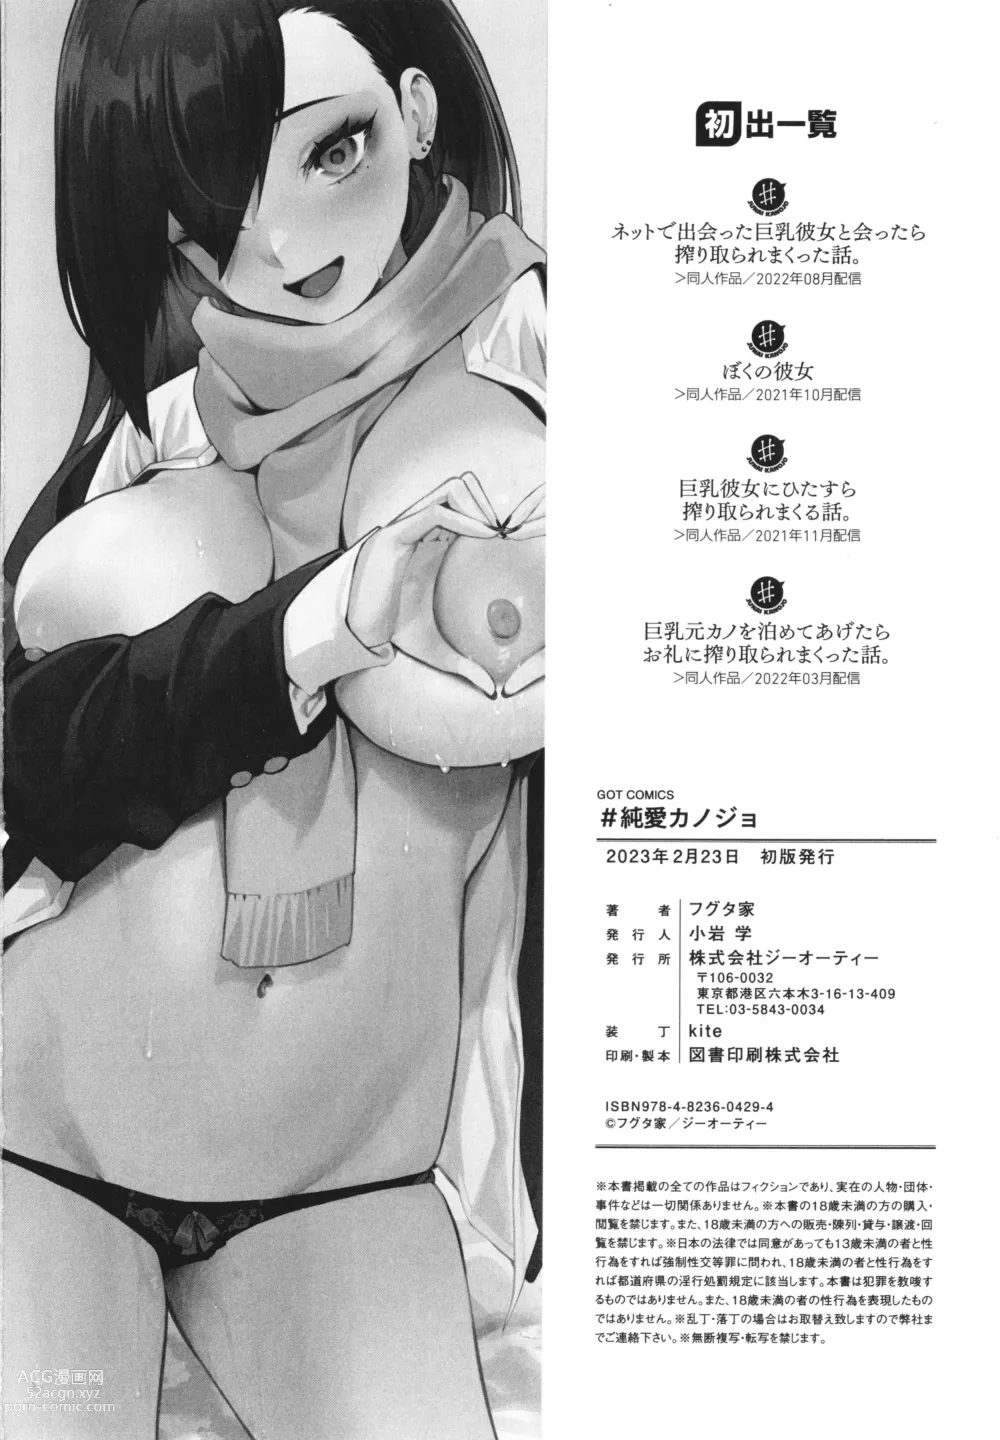 Page 197 of manga #Junai Kanojo